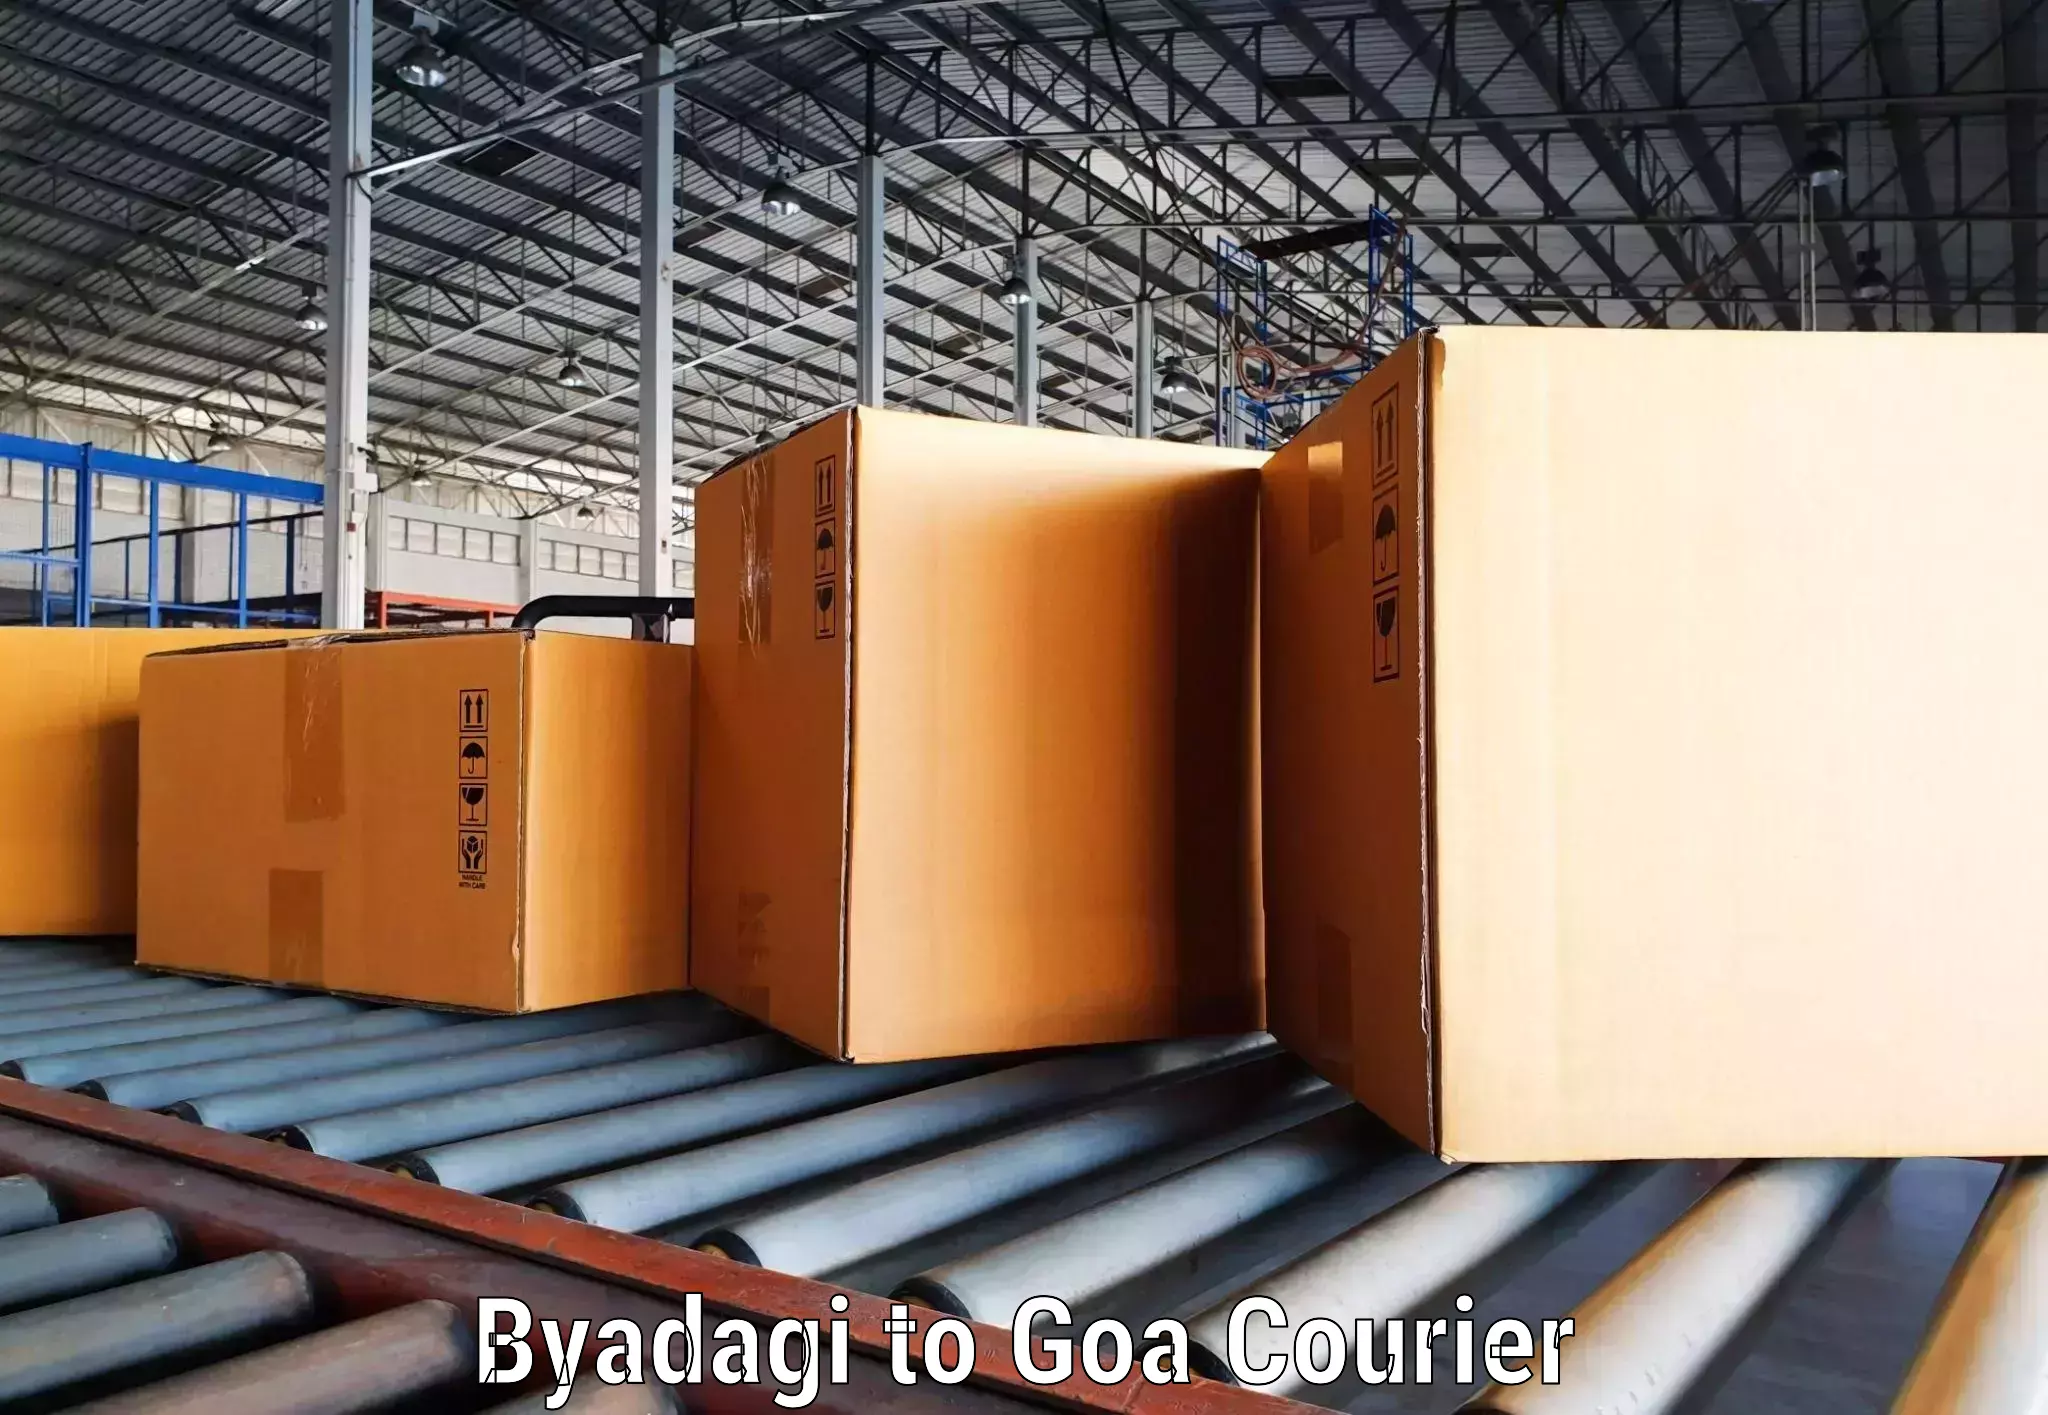 Quality courier partnerships Byadagi to Goa